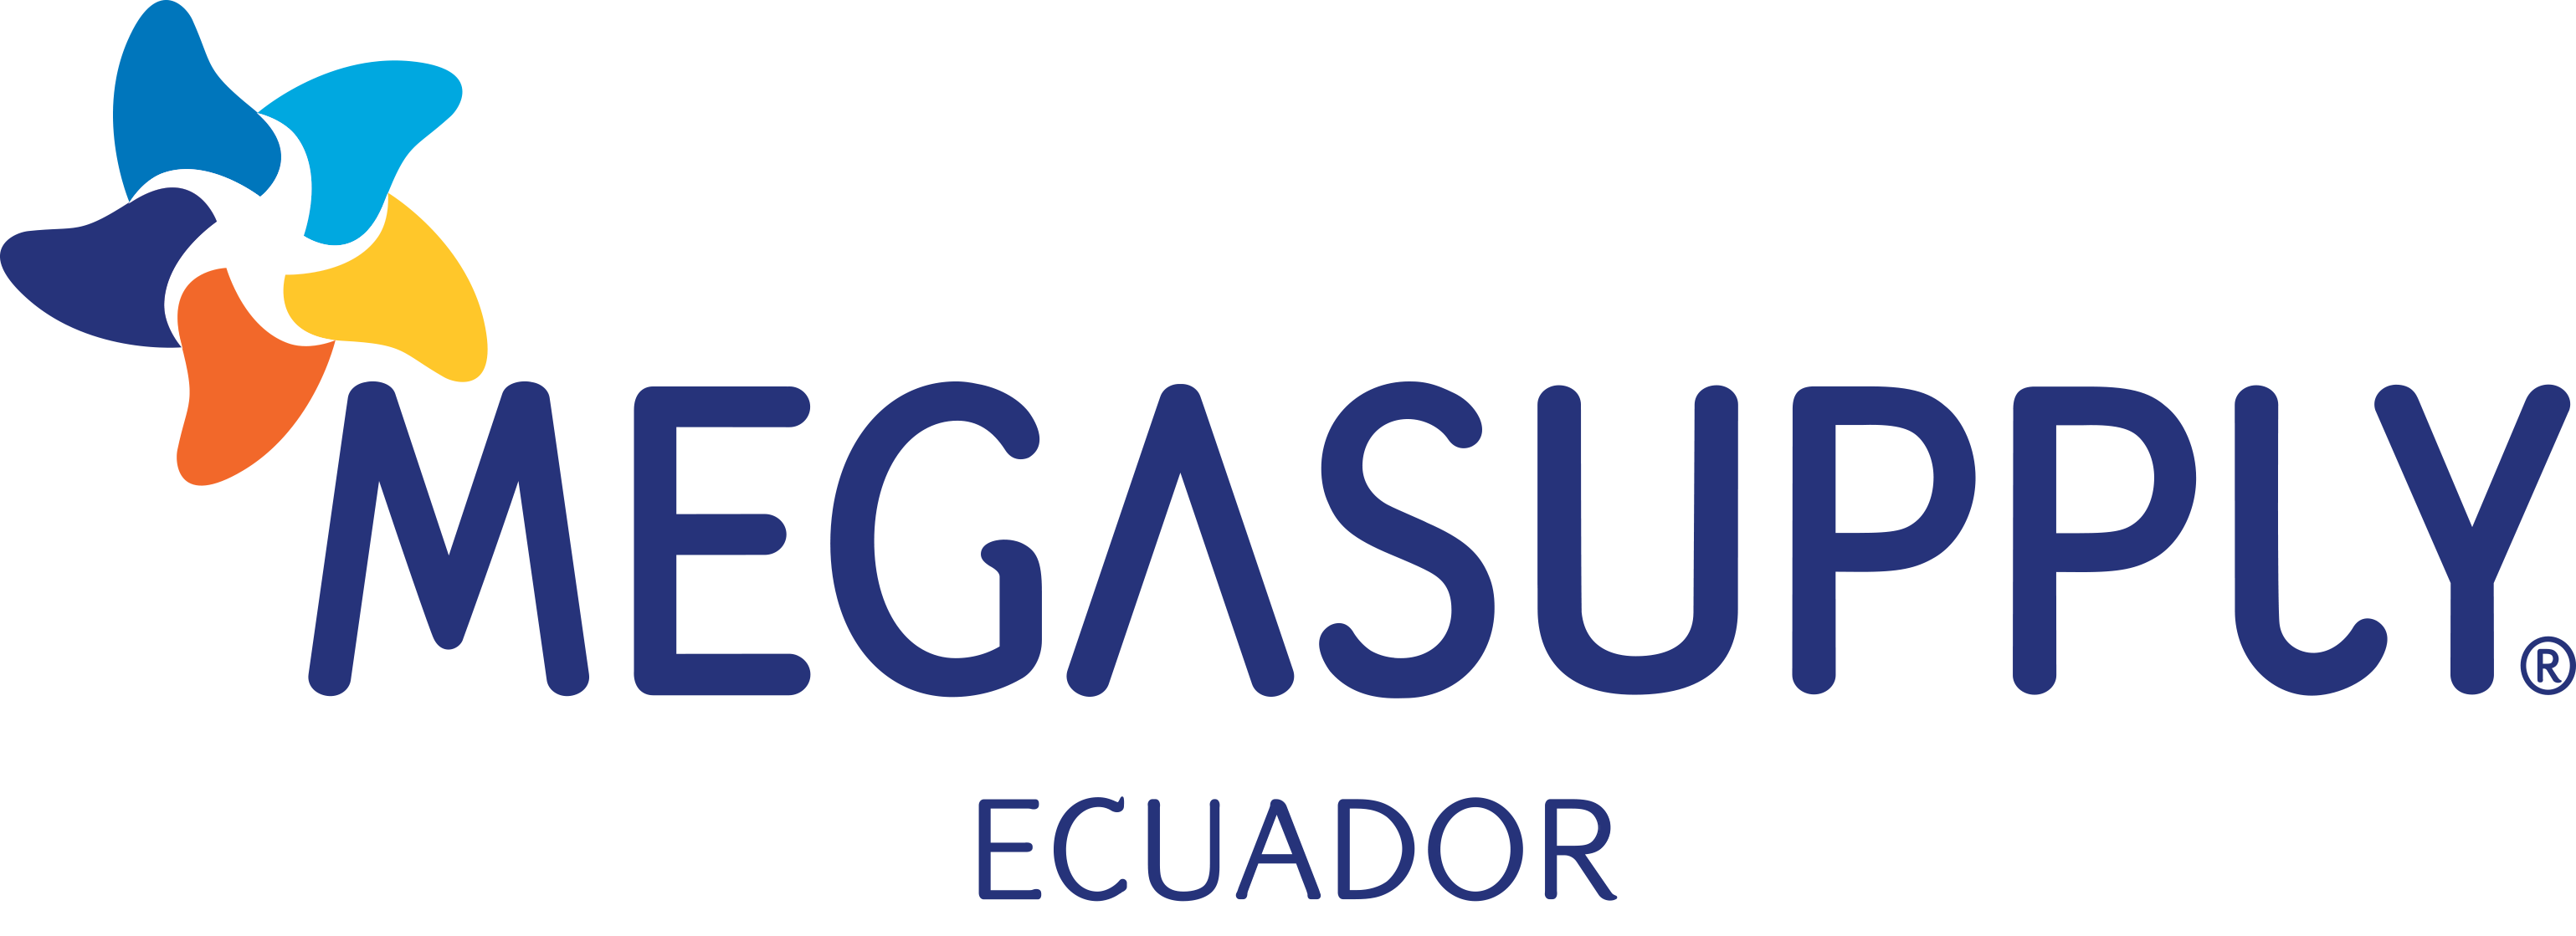 Megasupply del Ecuador